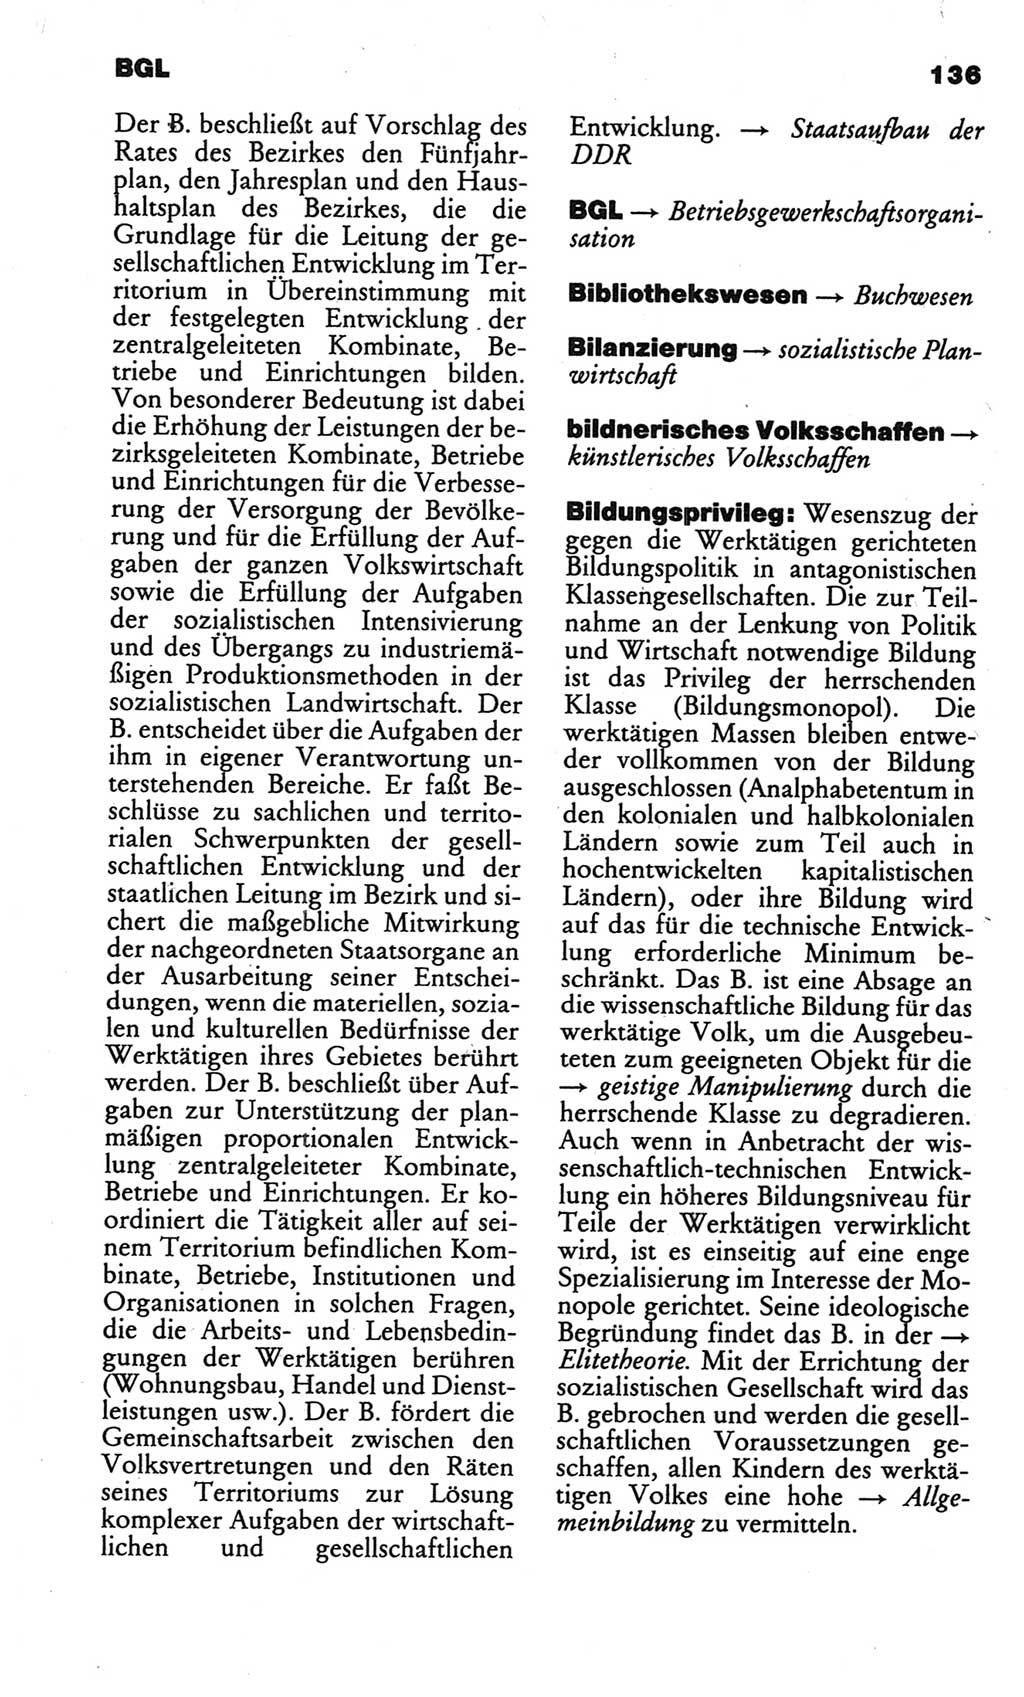 Kleines politisches Wörterbuch [Deutsche Demokratische Republik (DDR)] 1986, Seite 136 (Kl. pol. Wb. DDR 1986, S. 136)